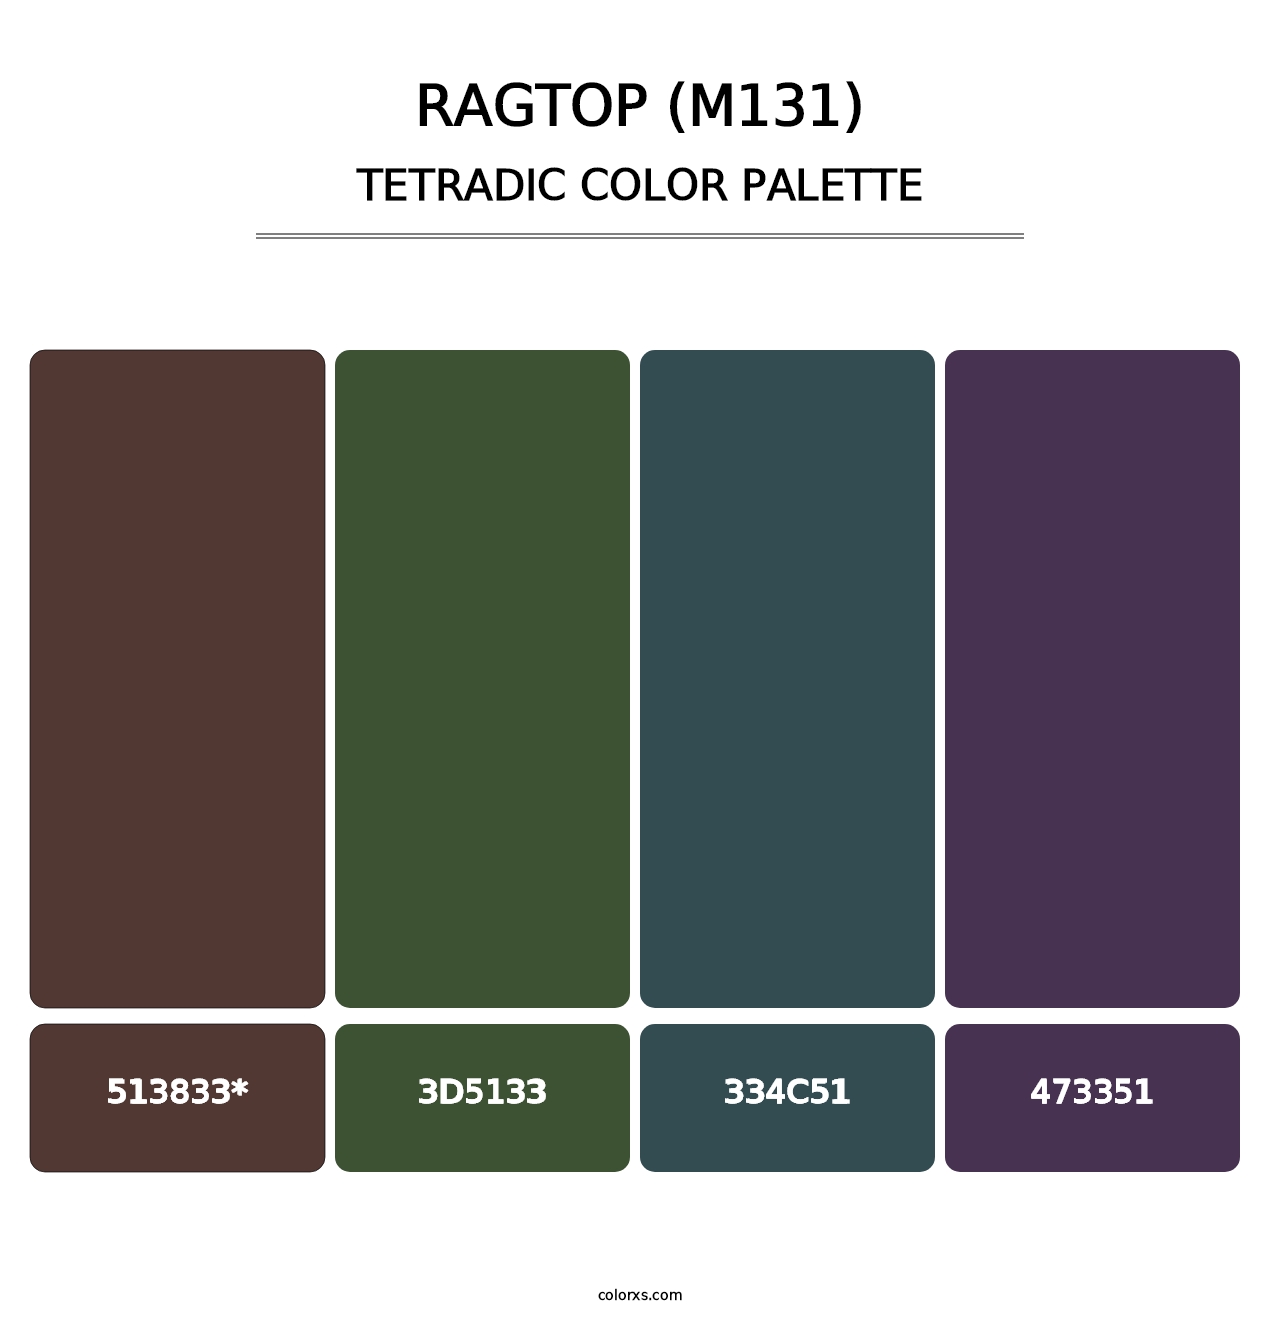 Ragtop (M131) - Tetradic Color Palette